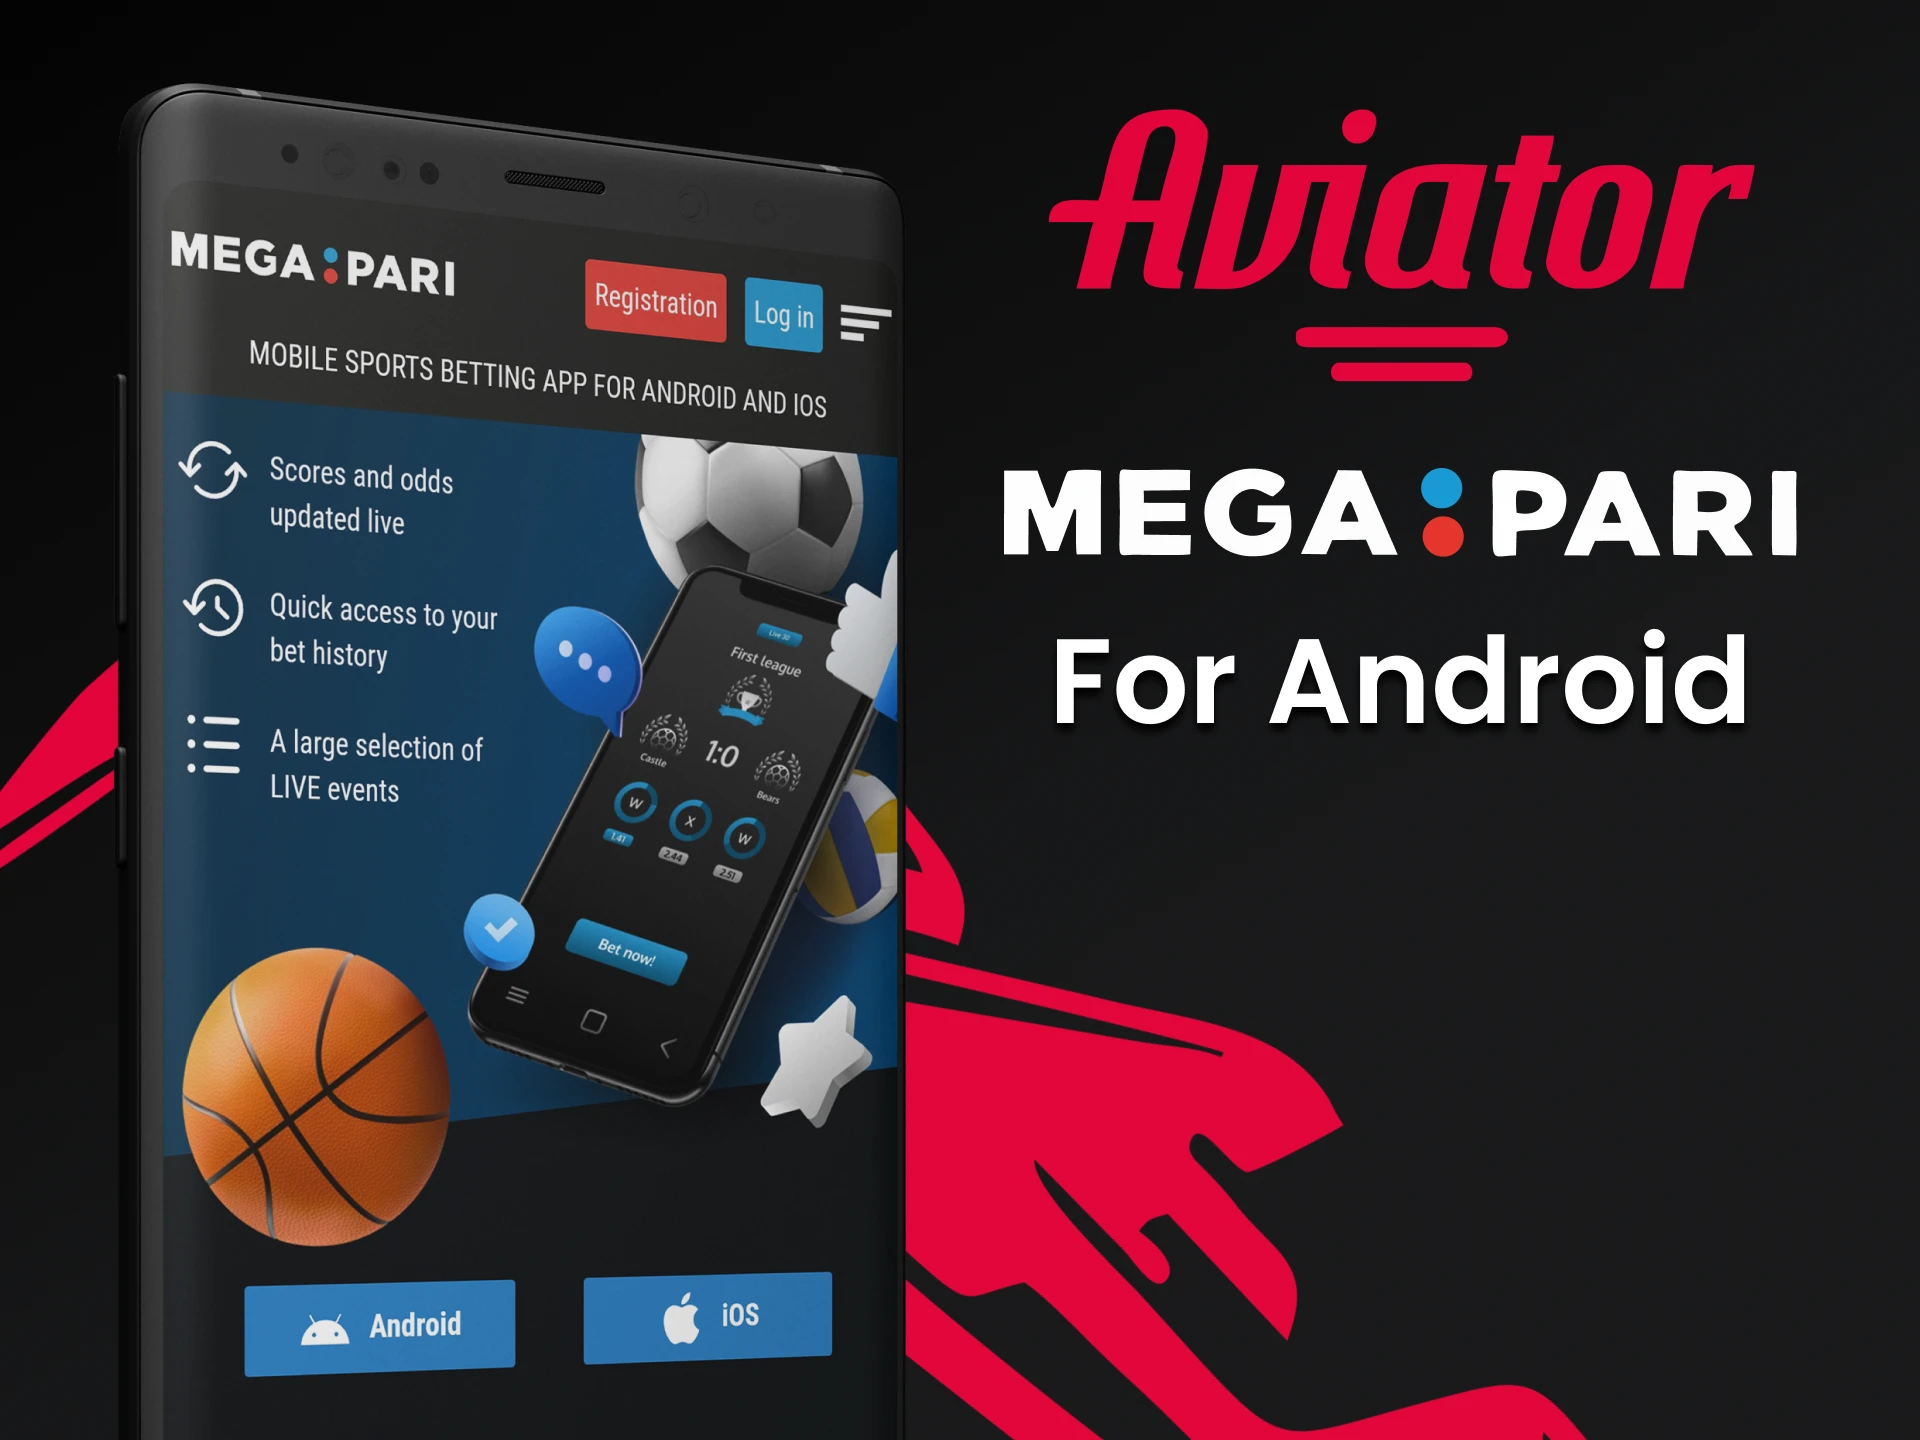 Baixe o aplicativo Megapari para Android para jogar Aviator.